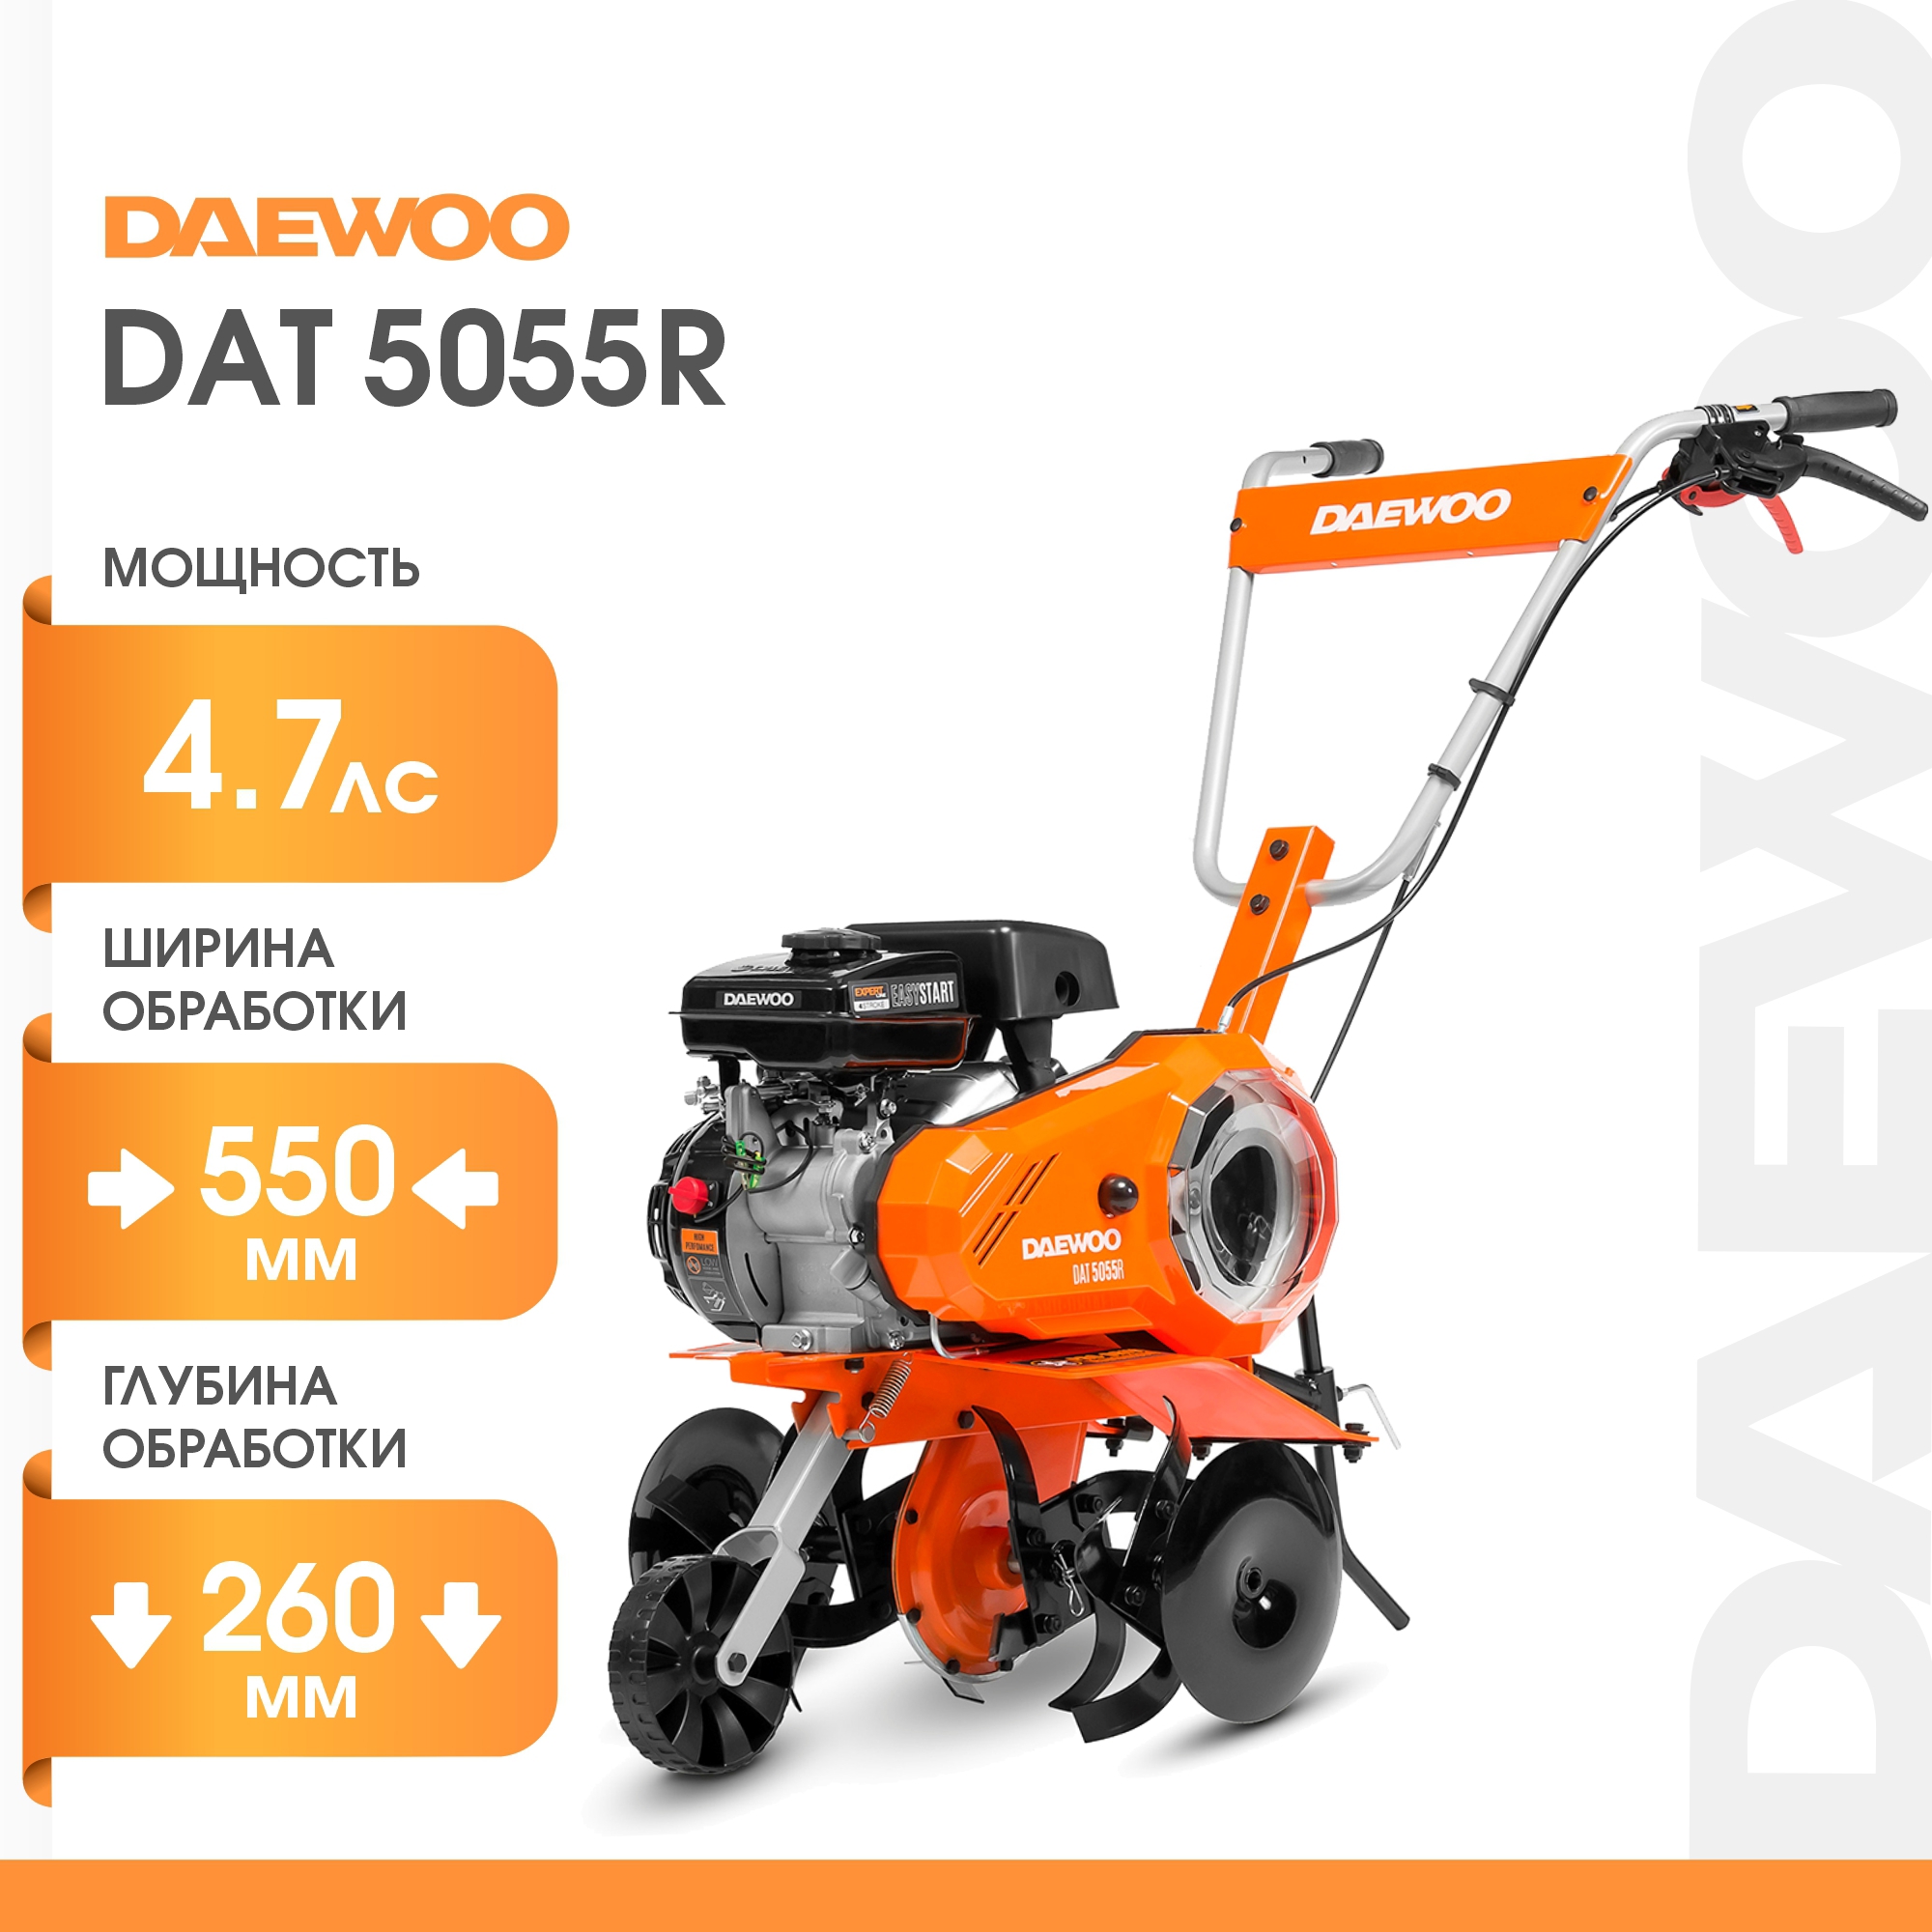  бензиновый Daewoo DAT 5055R по цене 37990 ₽/шт.  в .